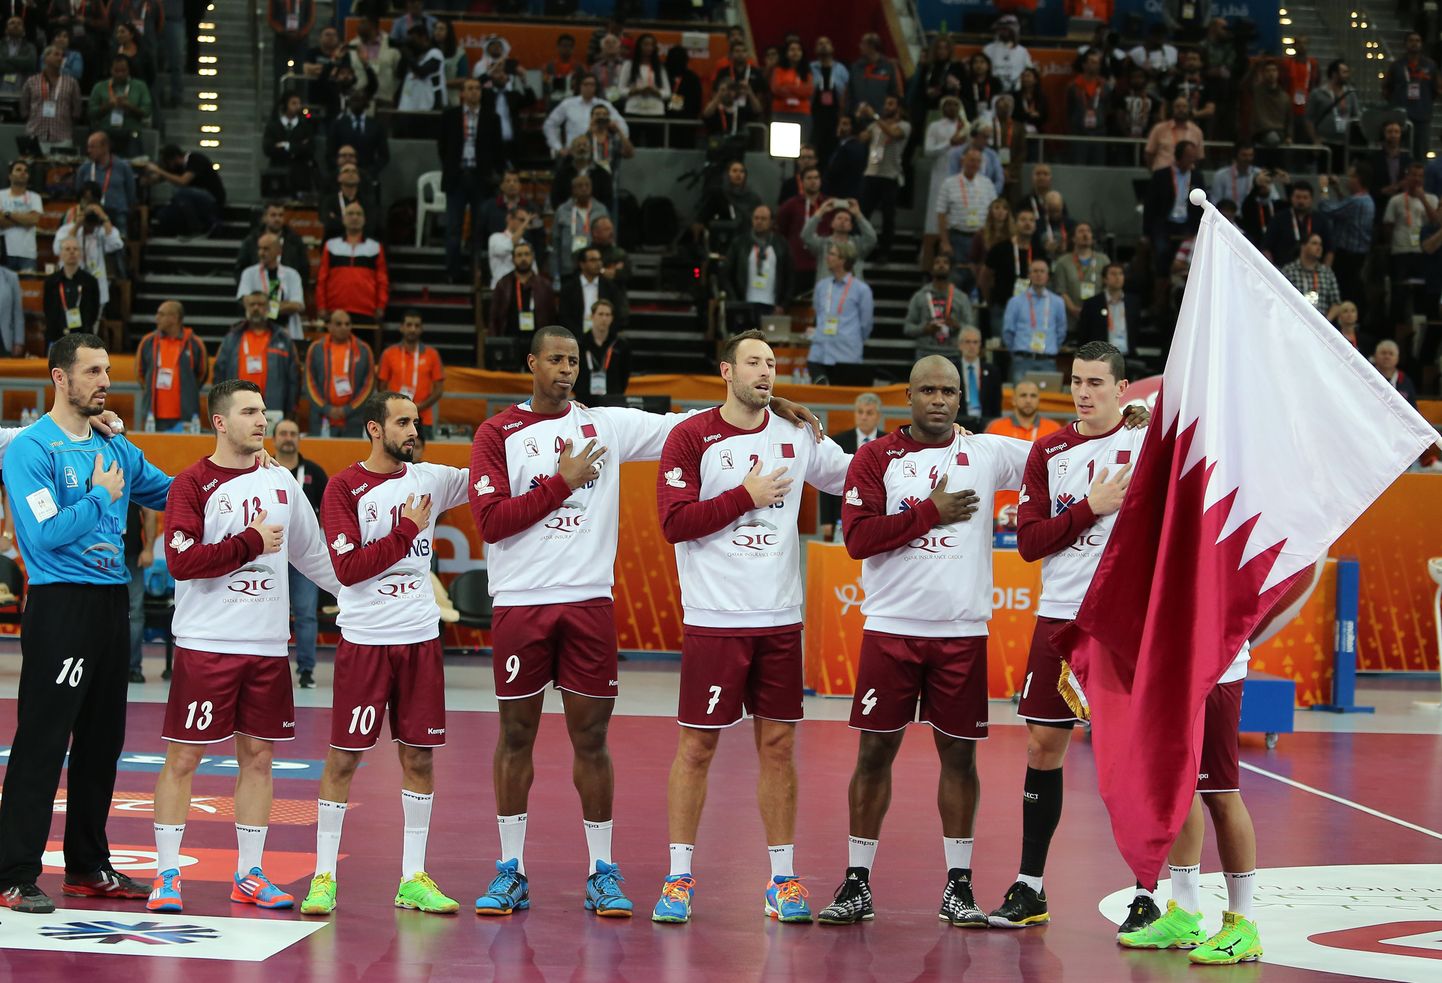 Katari võõrleegion on enne veerandfinaali Saksamaaga asetanud hümni mängimise ajaks käe südamele ja samal ajal lastakse laulul kõlada.